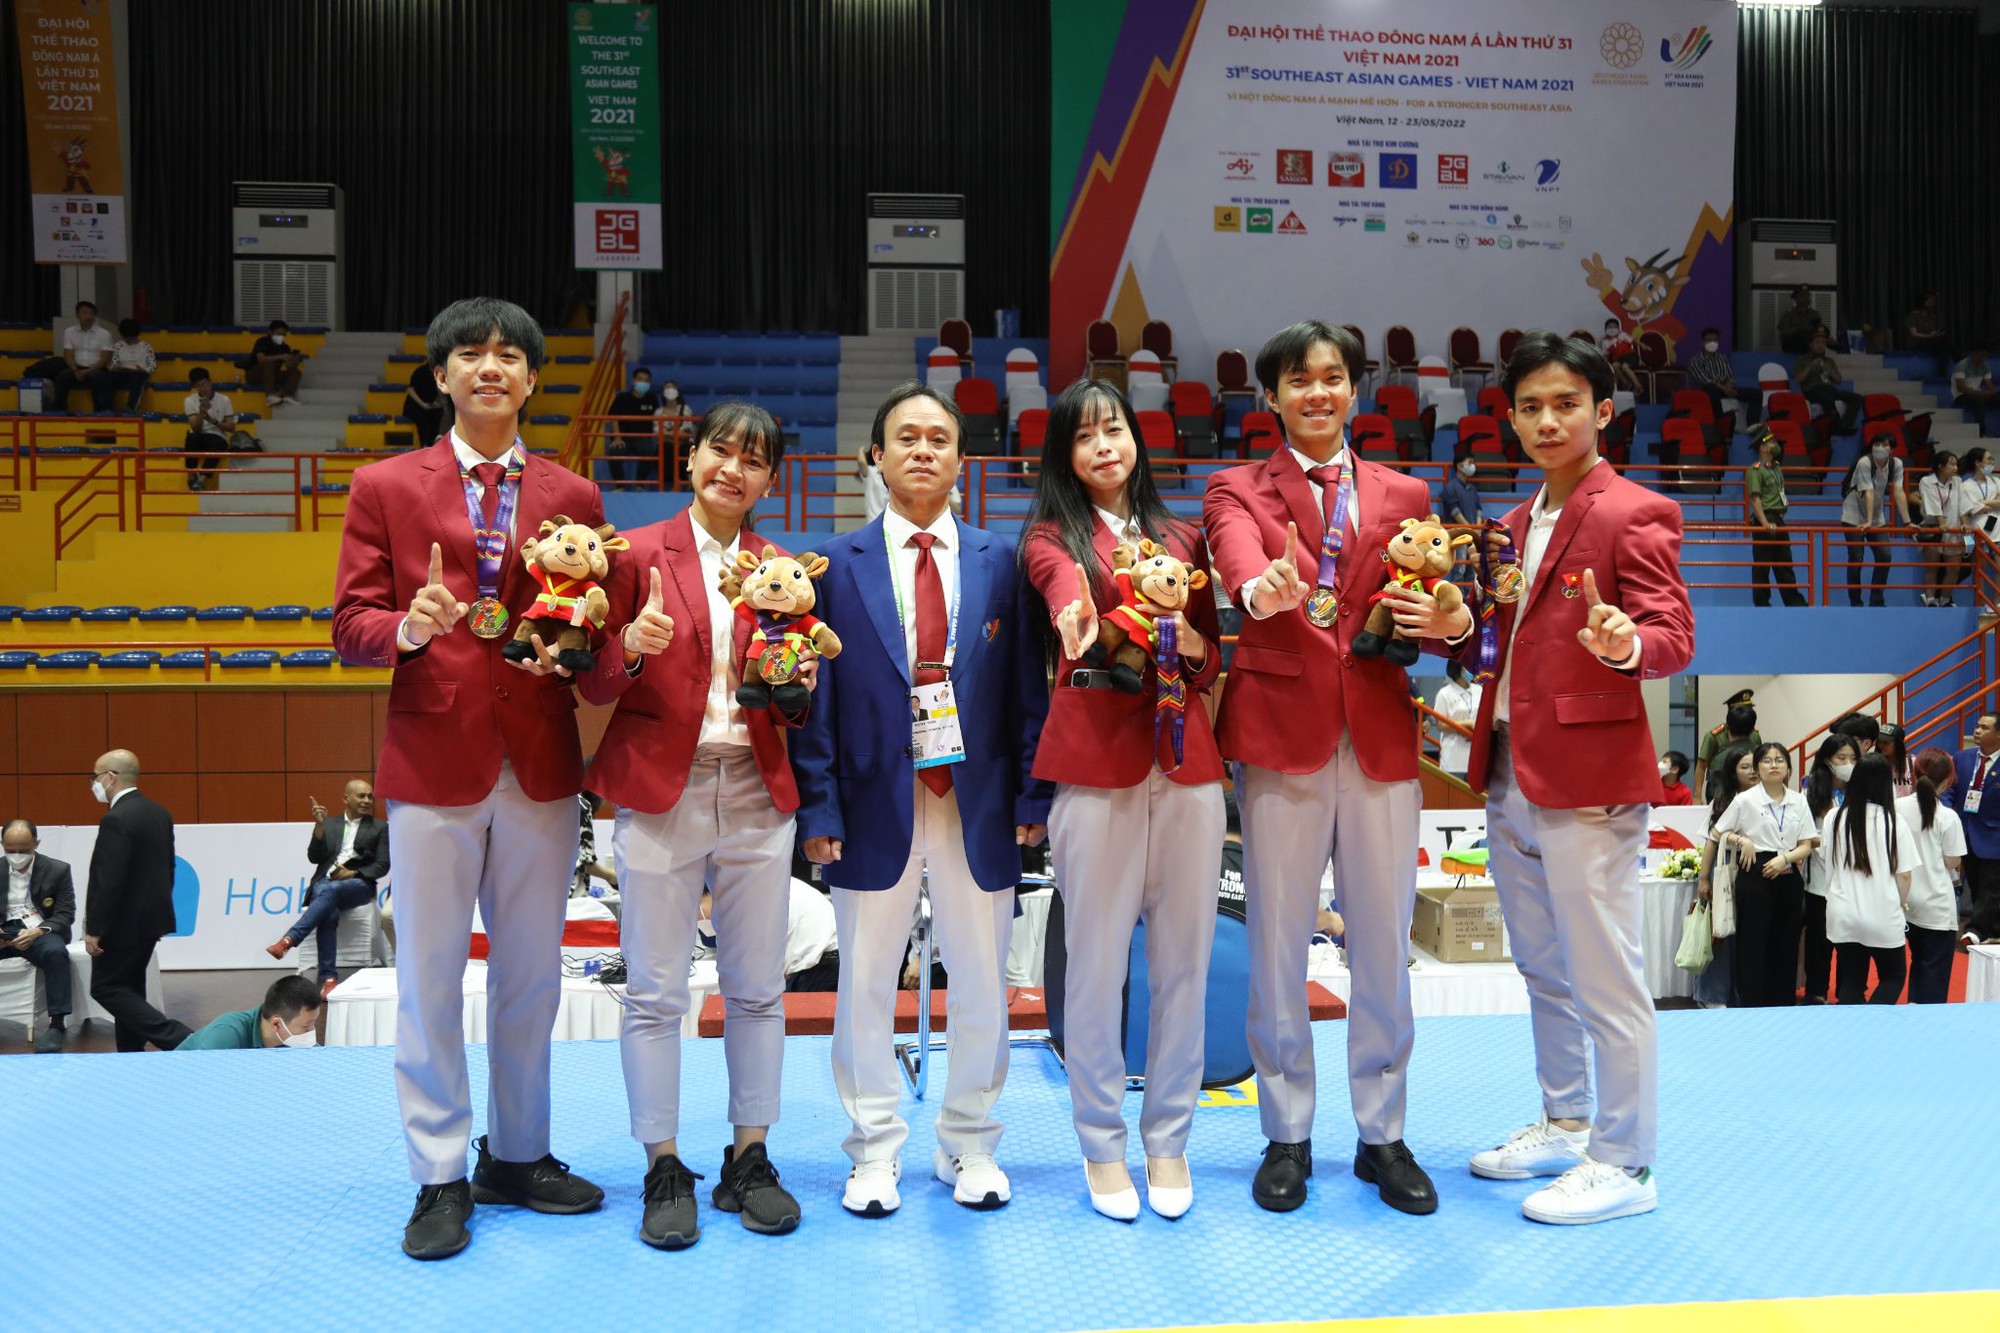 HLV Nguyễn Thanh Huy – Người thầy không bảng phấn, giúp taekwondo Việt Nam vươn tầm thế giới - Ảnh 1.